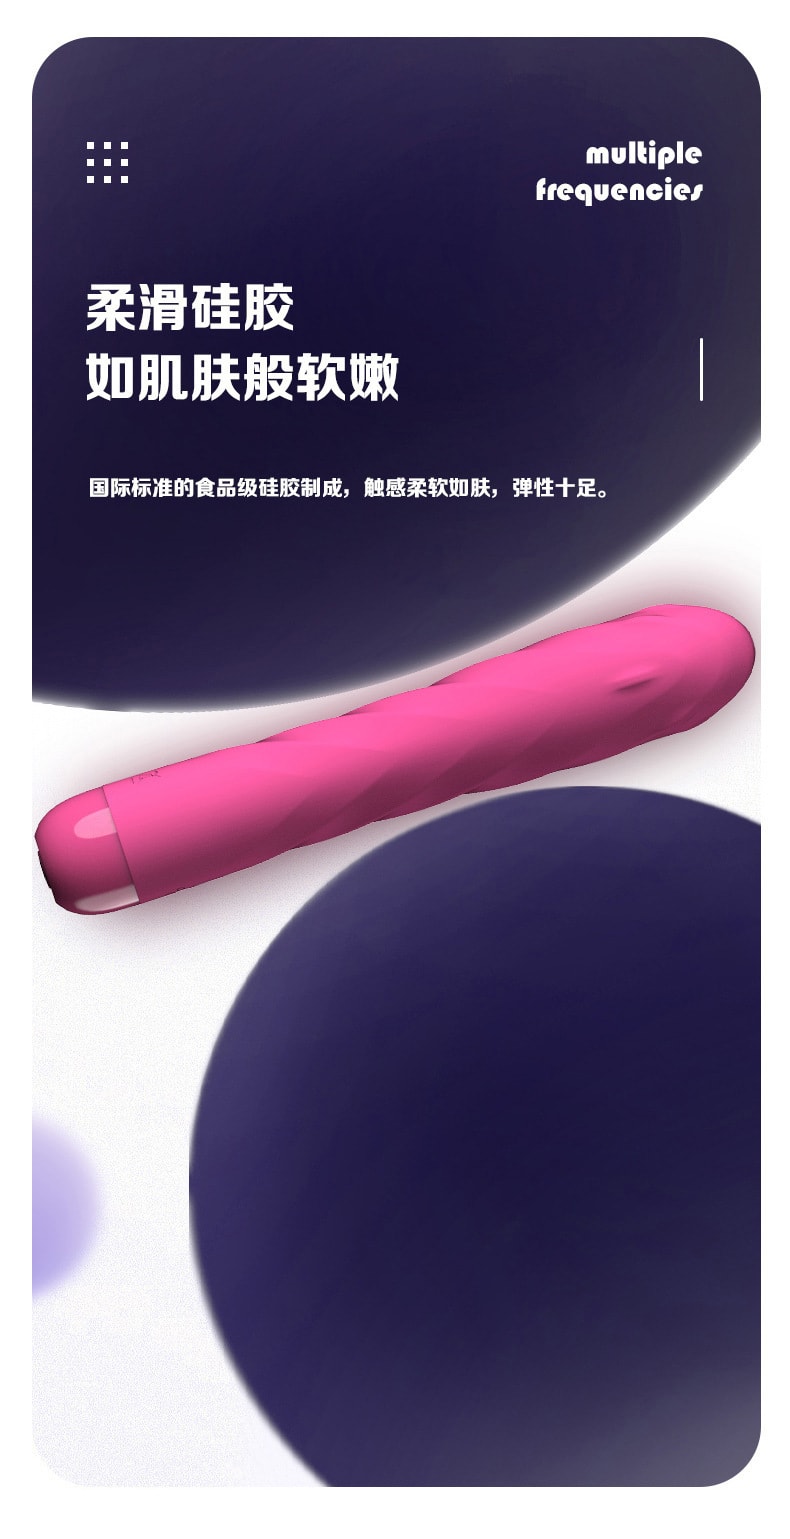 【中国直邮】杰士邦Softoy 多频震动按摩器棒 便携成人情趣用品 粉红色款